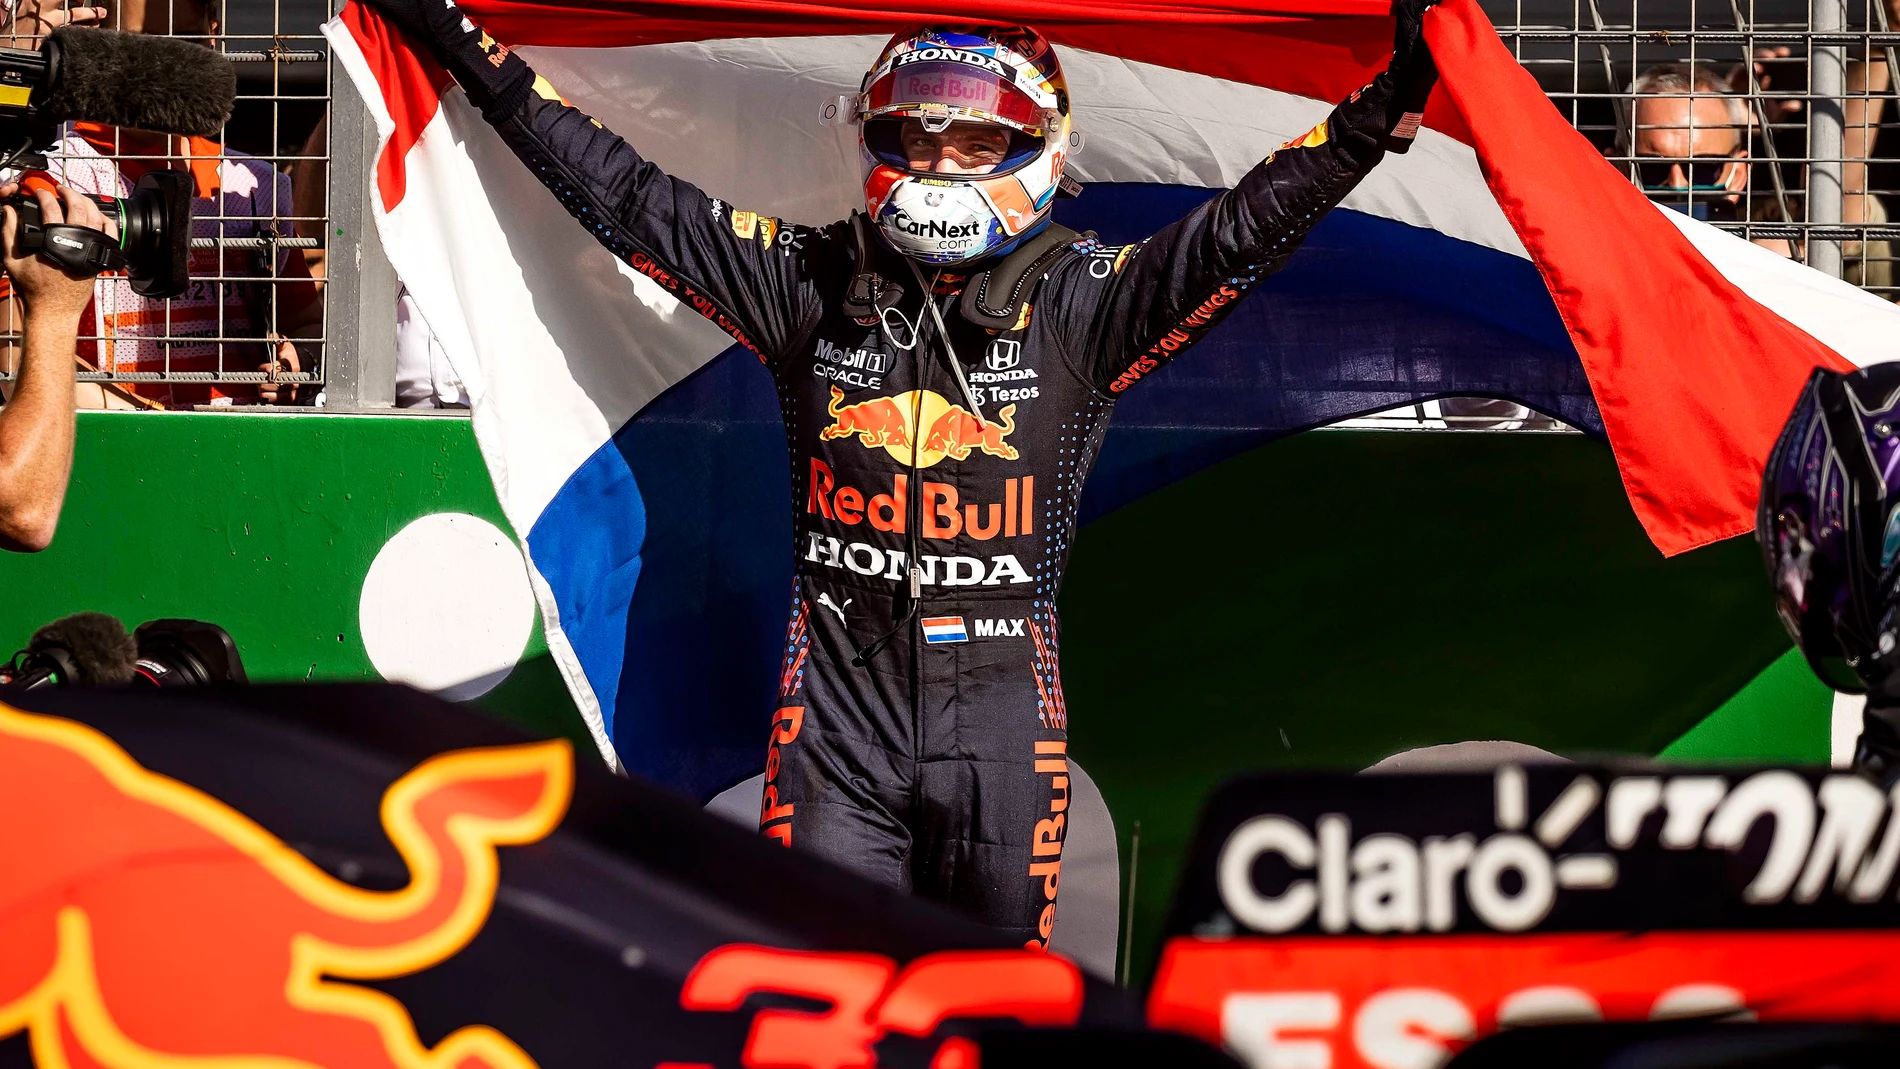 Verstappen vuelve a ser líder tras ganar el GP de los Países Bajos por delante de Hamilton, Alonso 6º y Sainz 7º